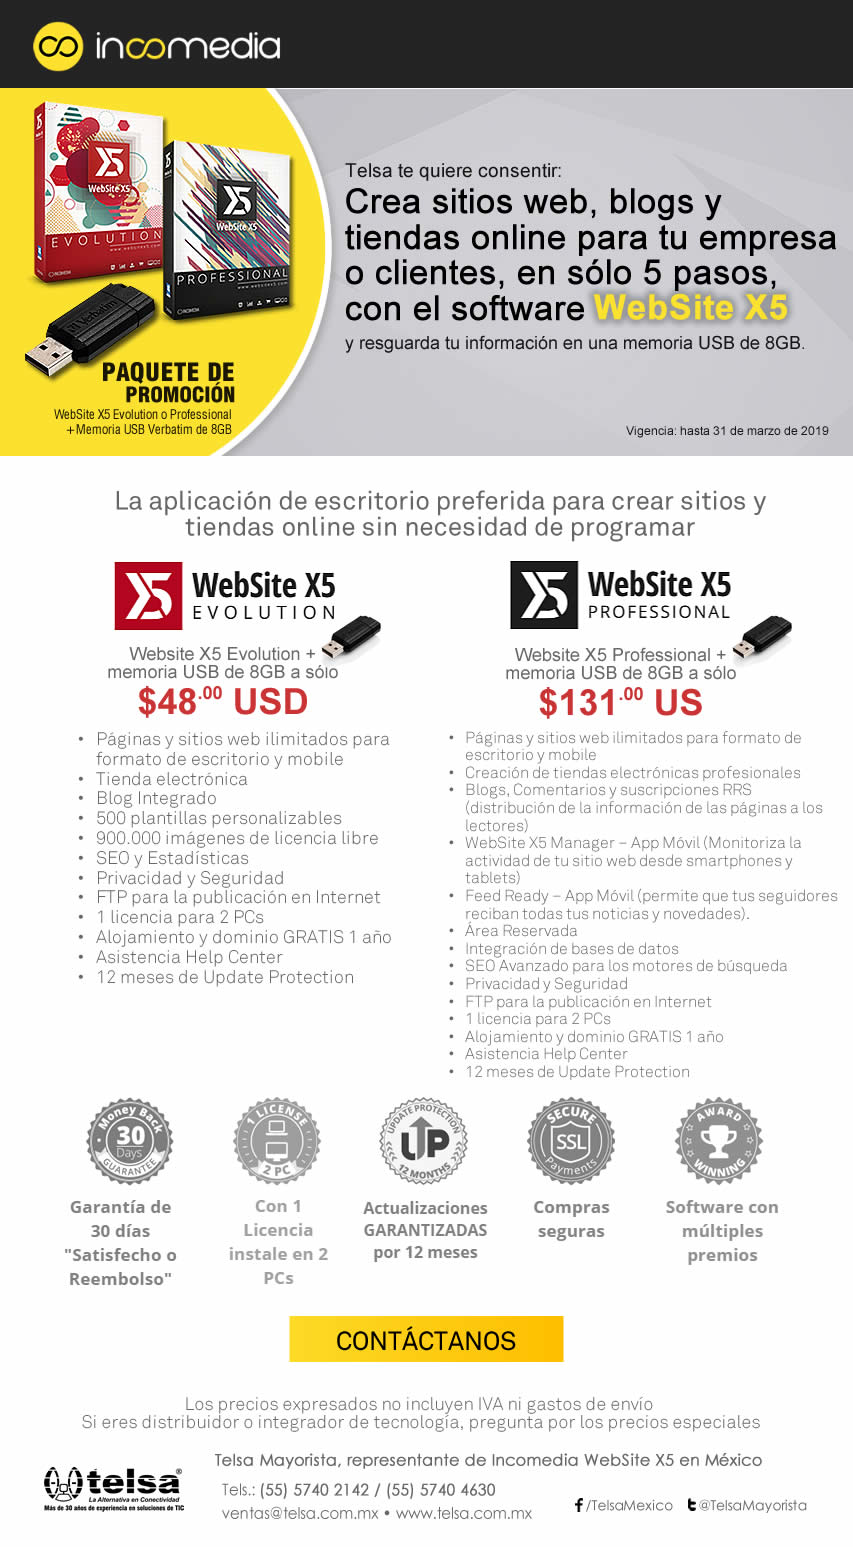 Paquete de Promoción: WebSite X5 más Memoria USB, ¡Contáctanos!